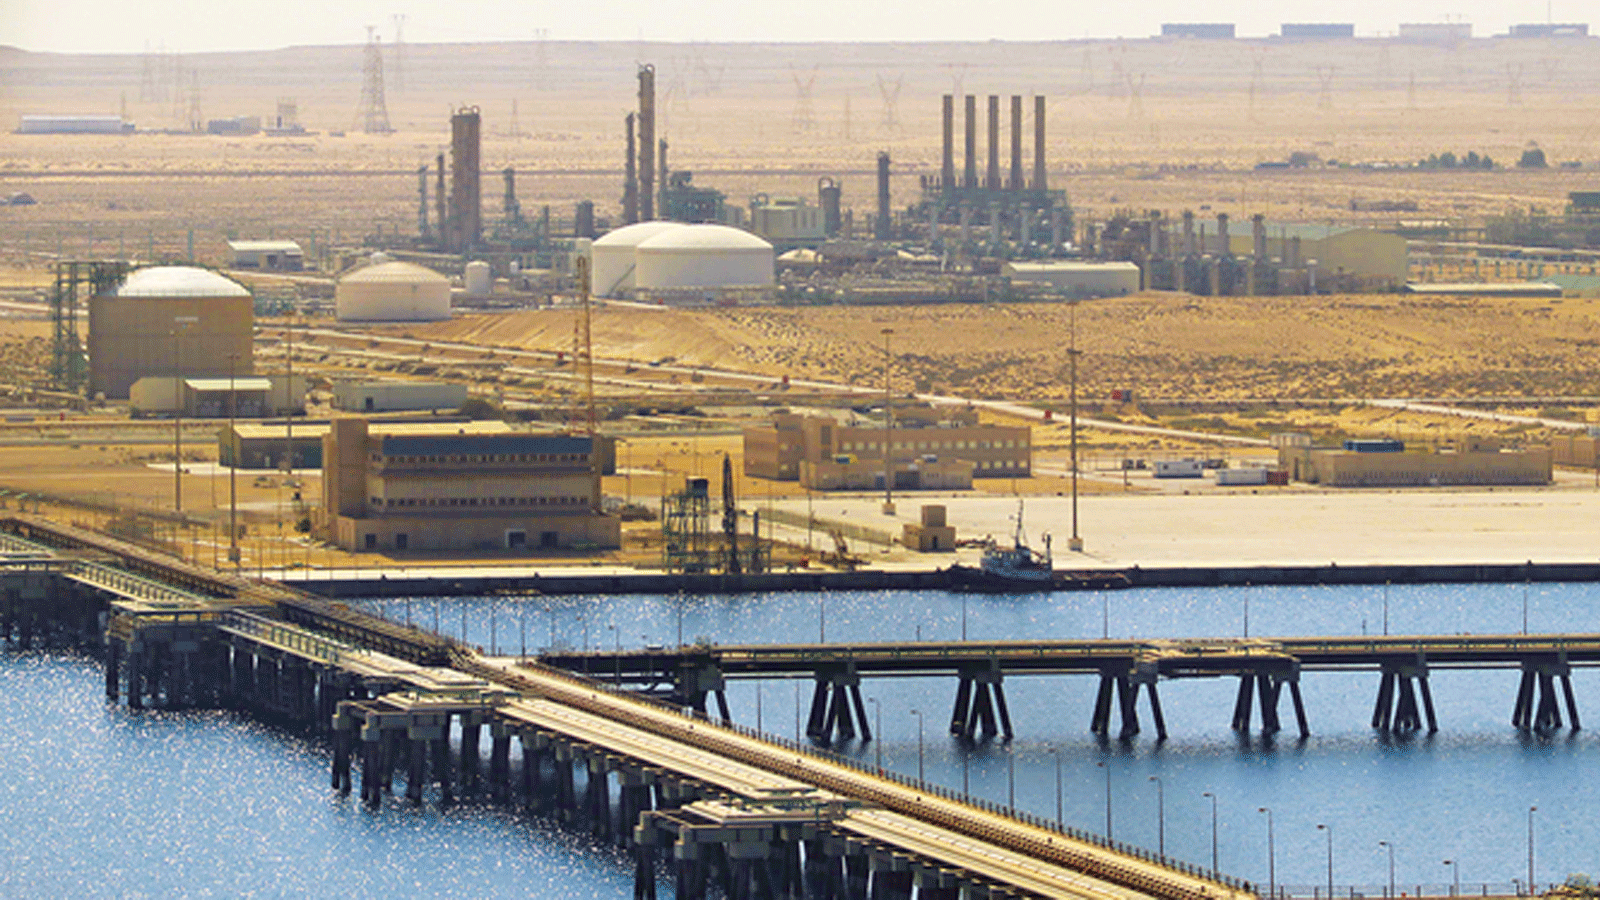 ميناء البريقة النفطي في مرسى البريقة، 270 كم غرب مدينة بنغازي بشرق ليبيا